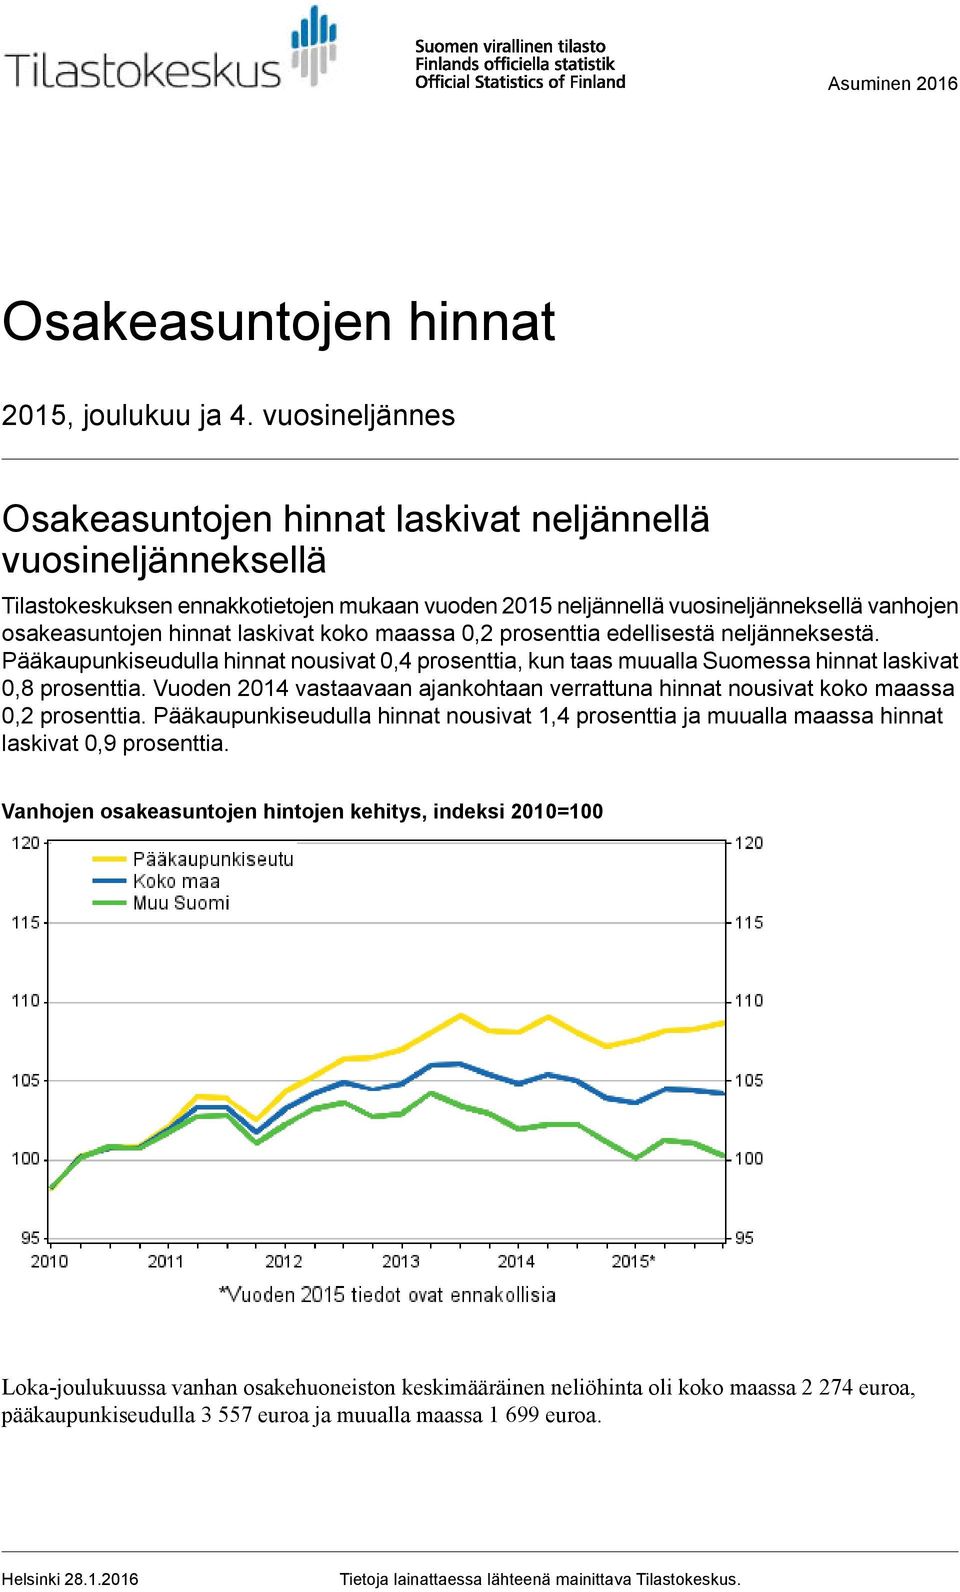 laskivat koko maassa prosenttia edellisestä neljänneksestä. Pääkaupunkiseudulla hinnat nousivat 0,4 prosenttia, kun taas muualla Suomessa hinnat laskivat 0,8 prosenttia.